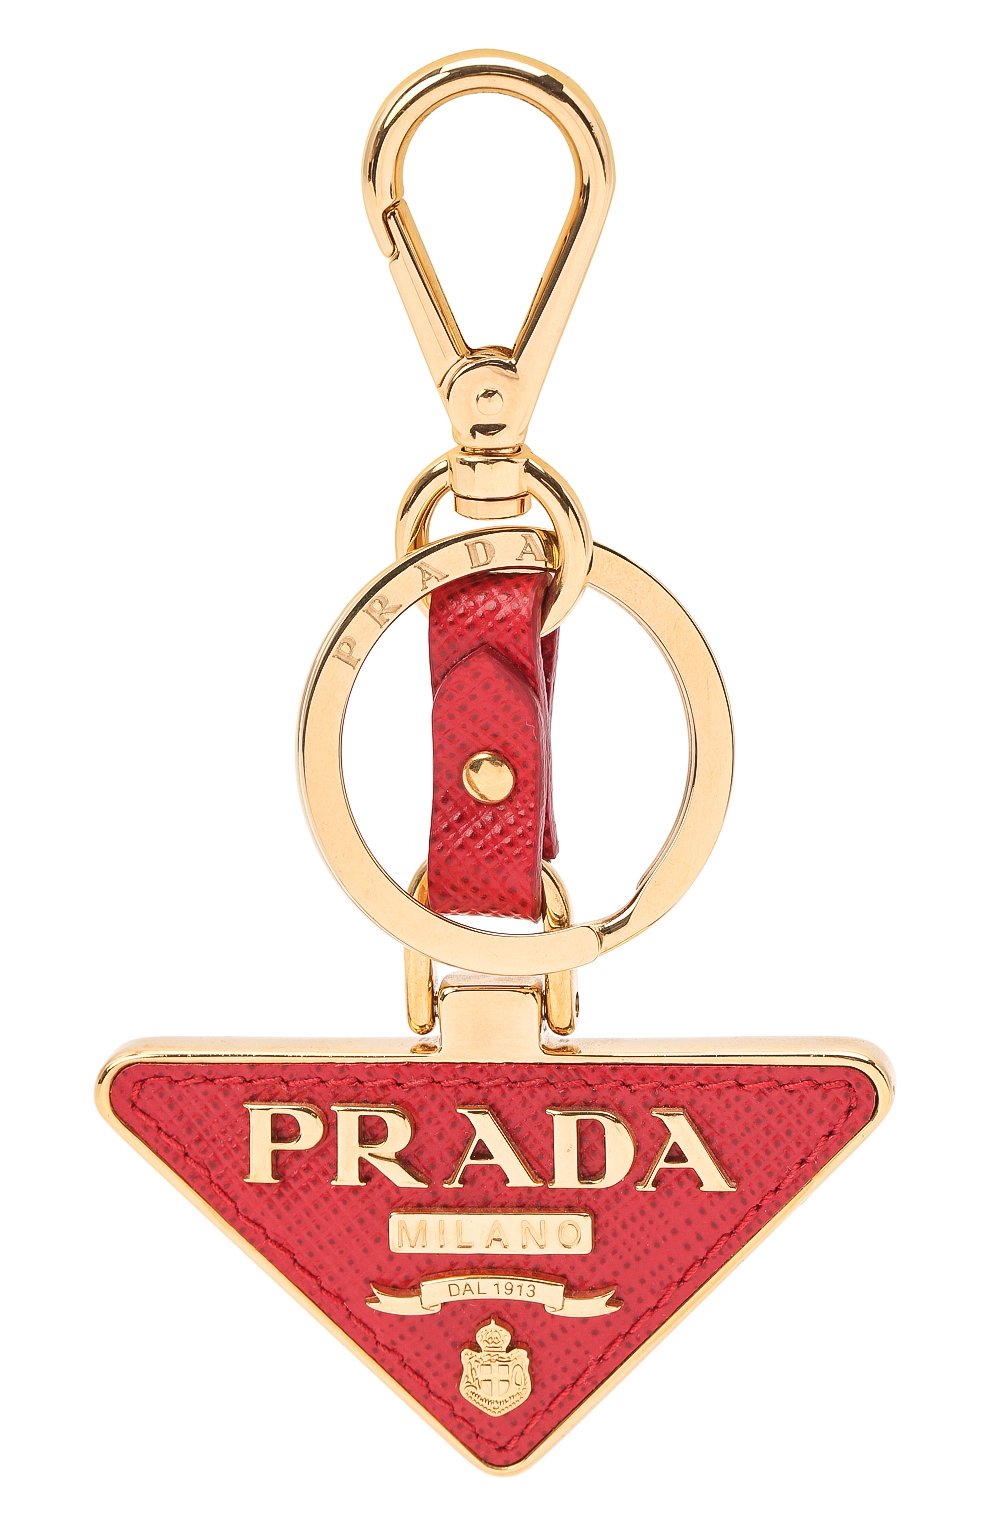 Брелоки Prada, Брелок для ключей Prada, Италия, Красный, Сталь; Кожа;, 12550842  - купить